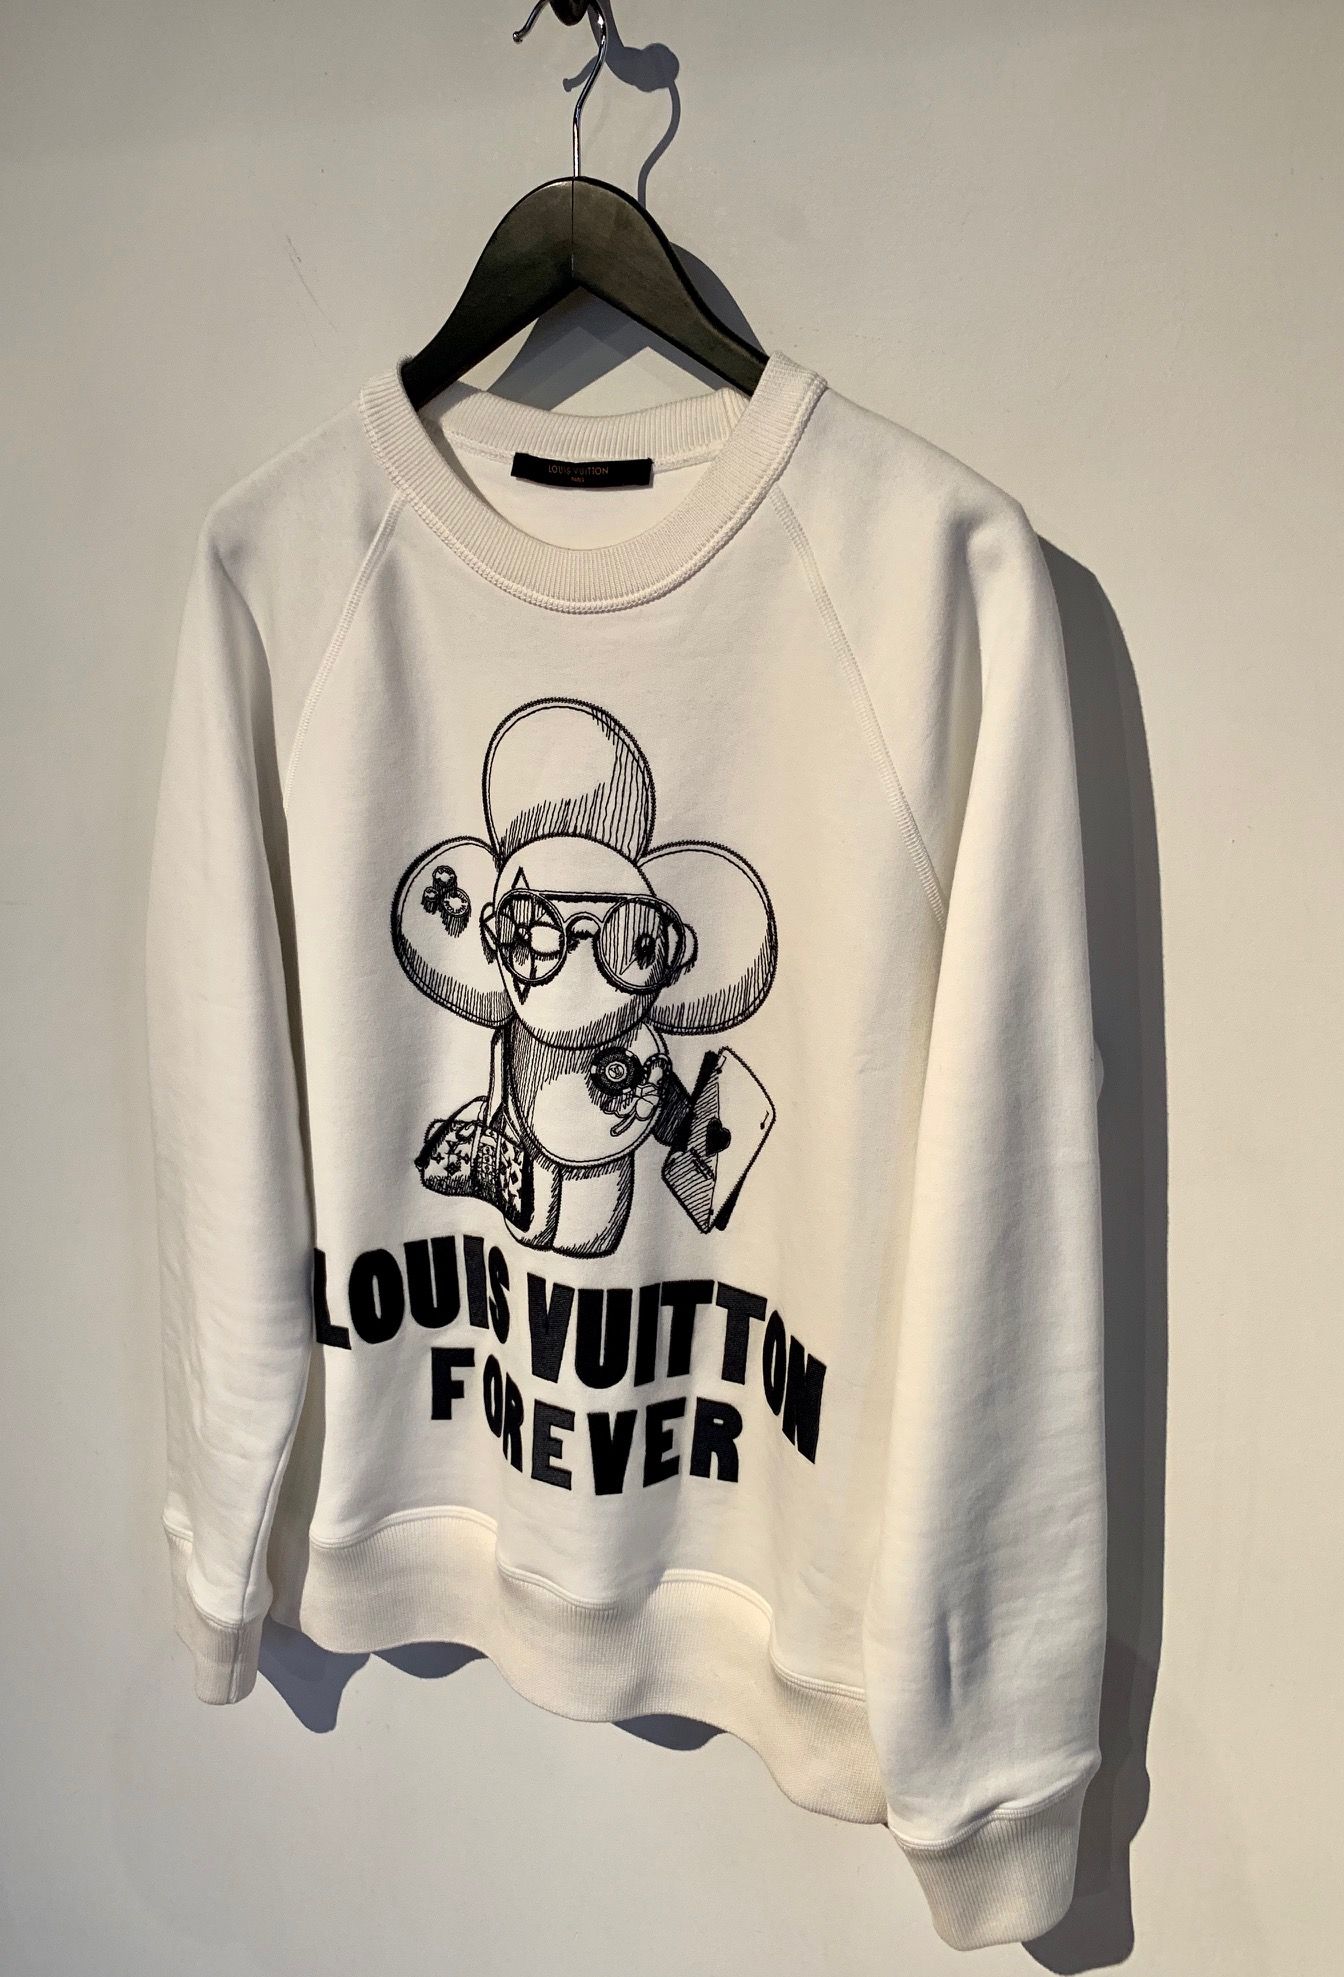 Louis Vuitton 2018 Vivienne Forever Sweatshirt - White Sweatshirts